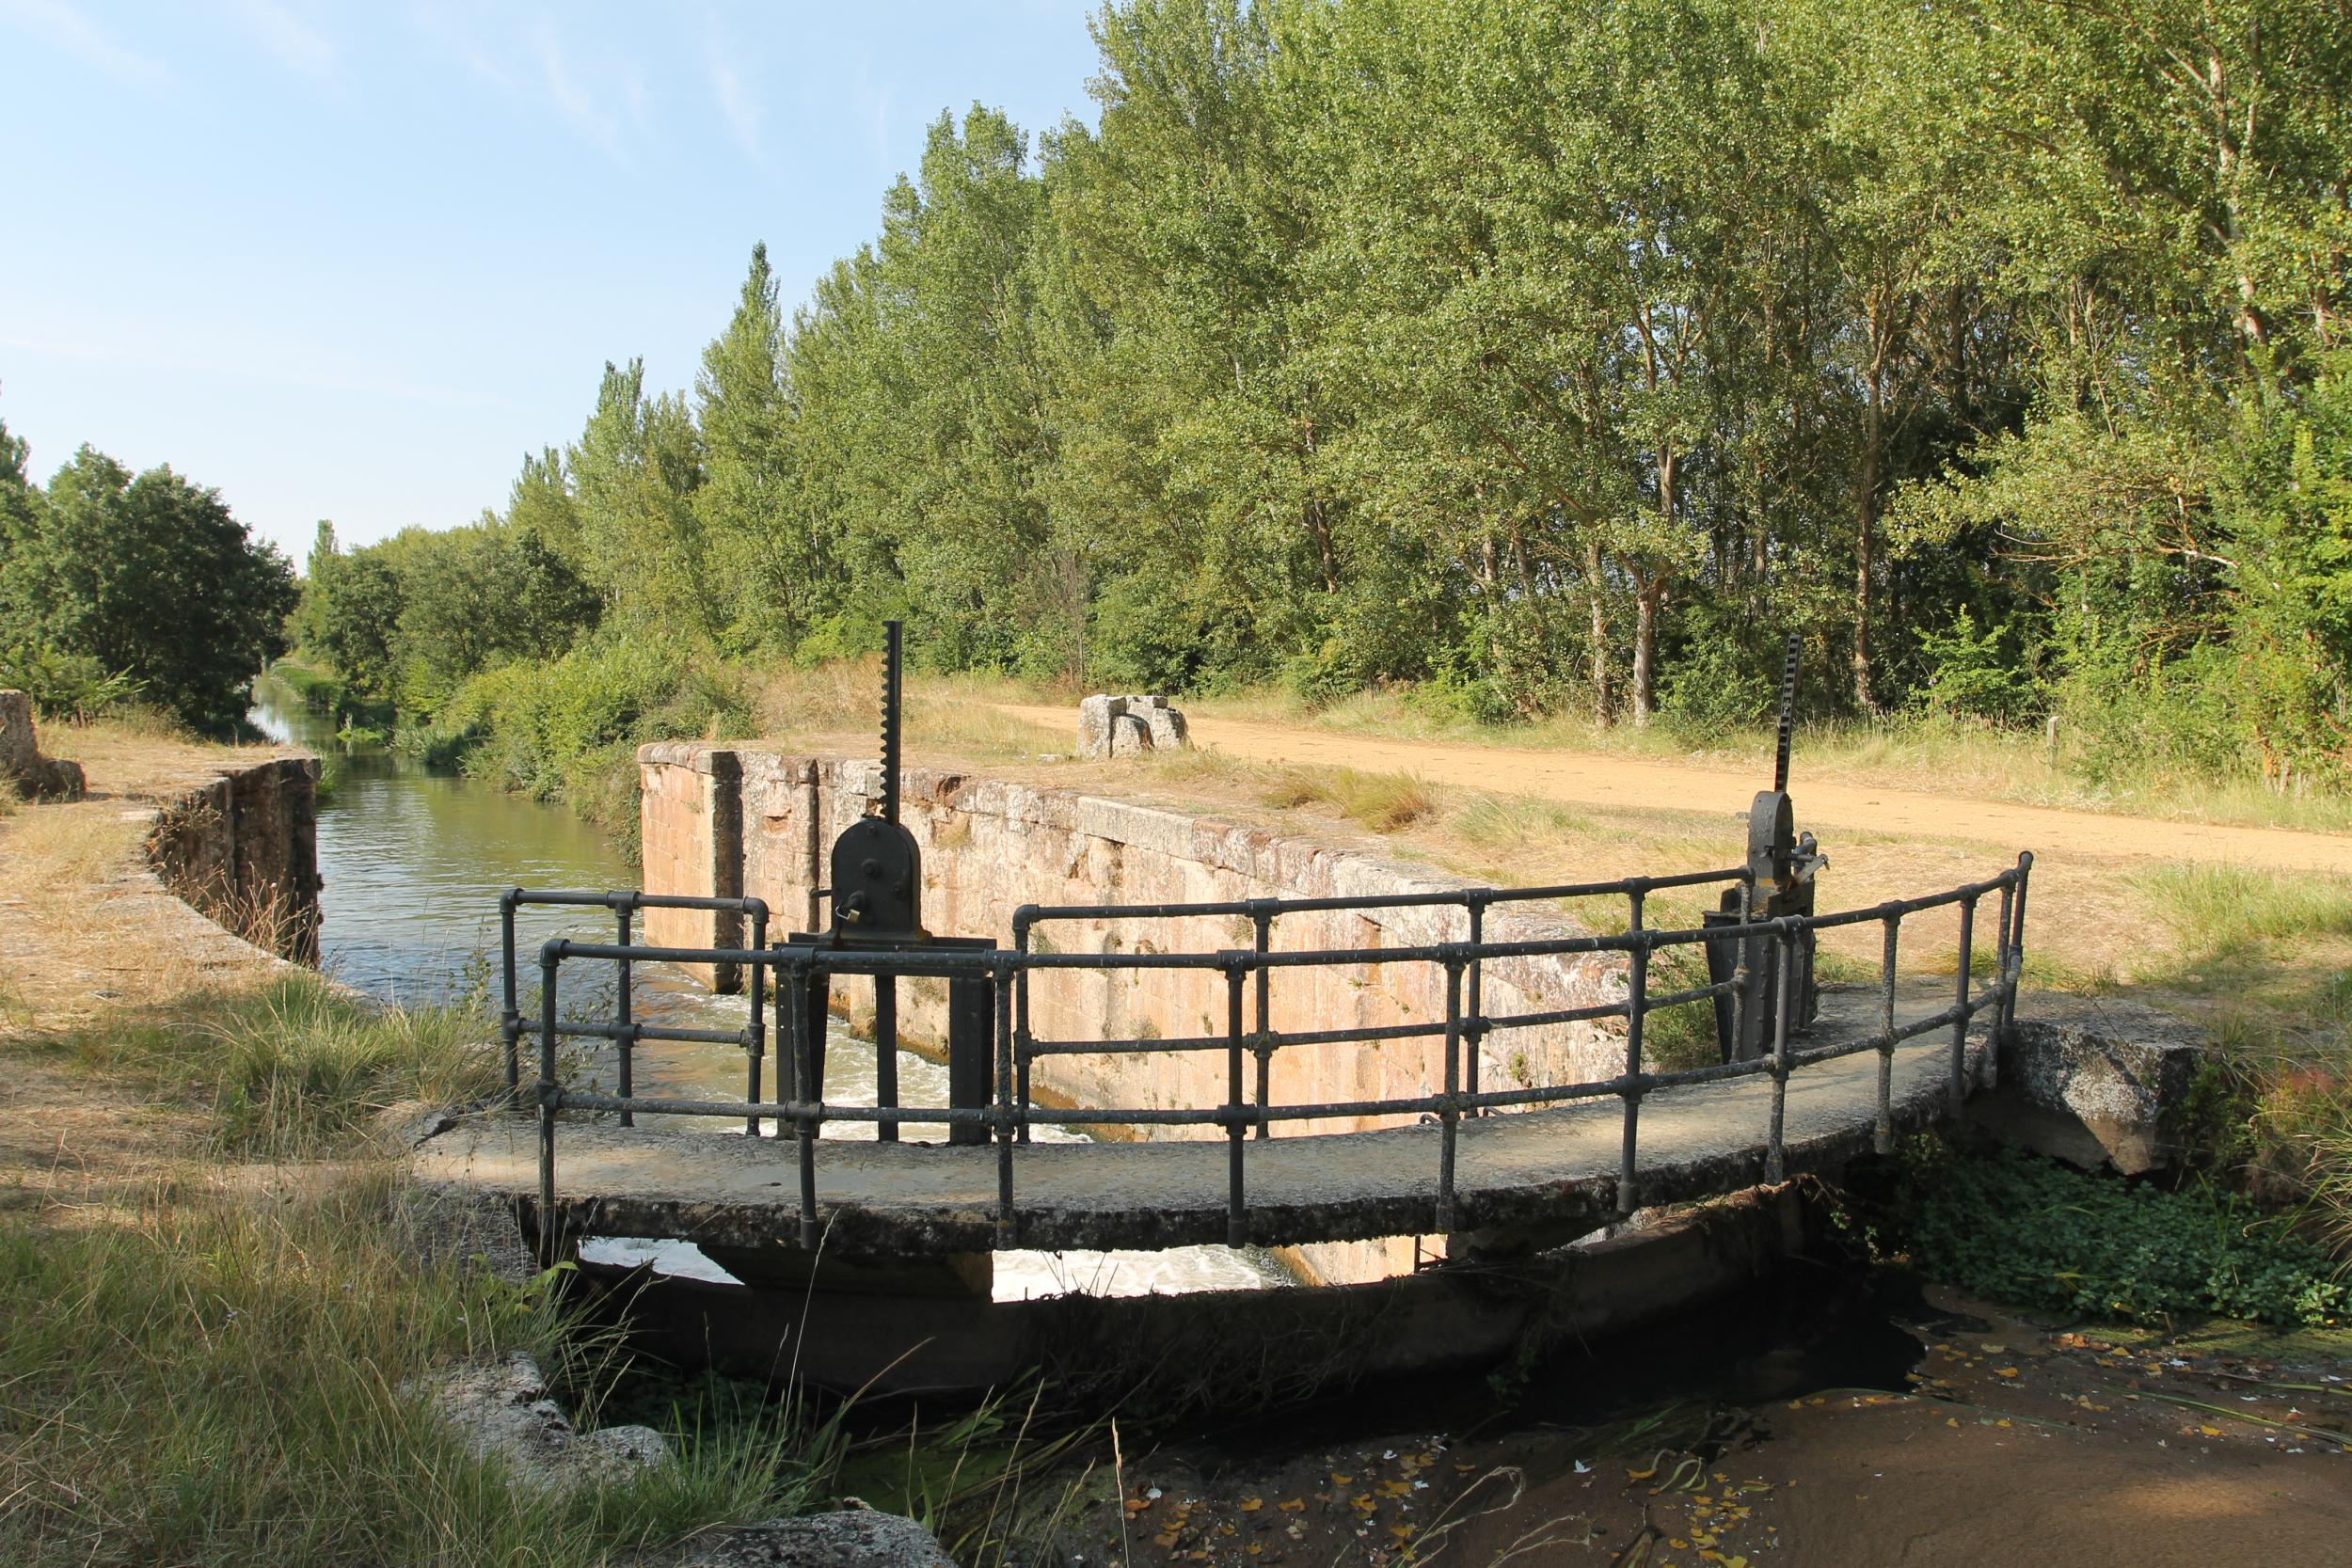 Esclusa 3 Canal de Castilla